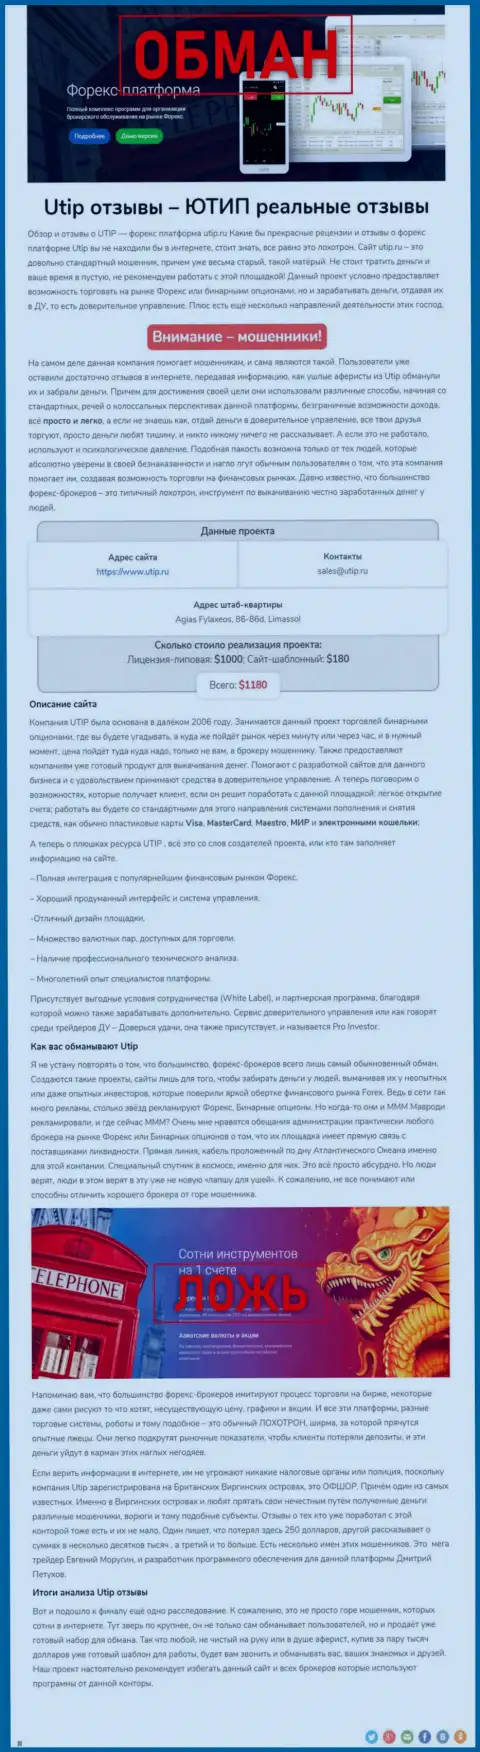 UTIP - это МОШЕННИК !!! Приемы грабежа (обзор махинаций)